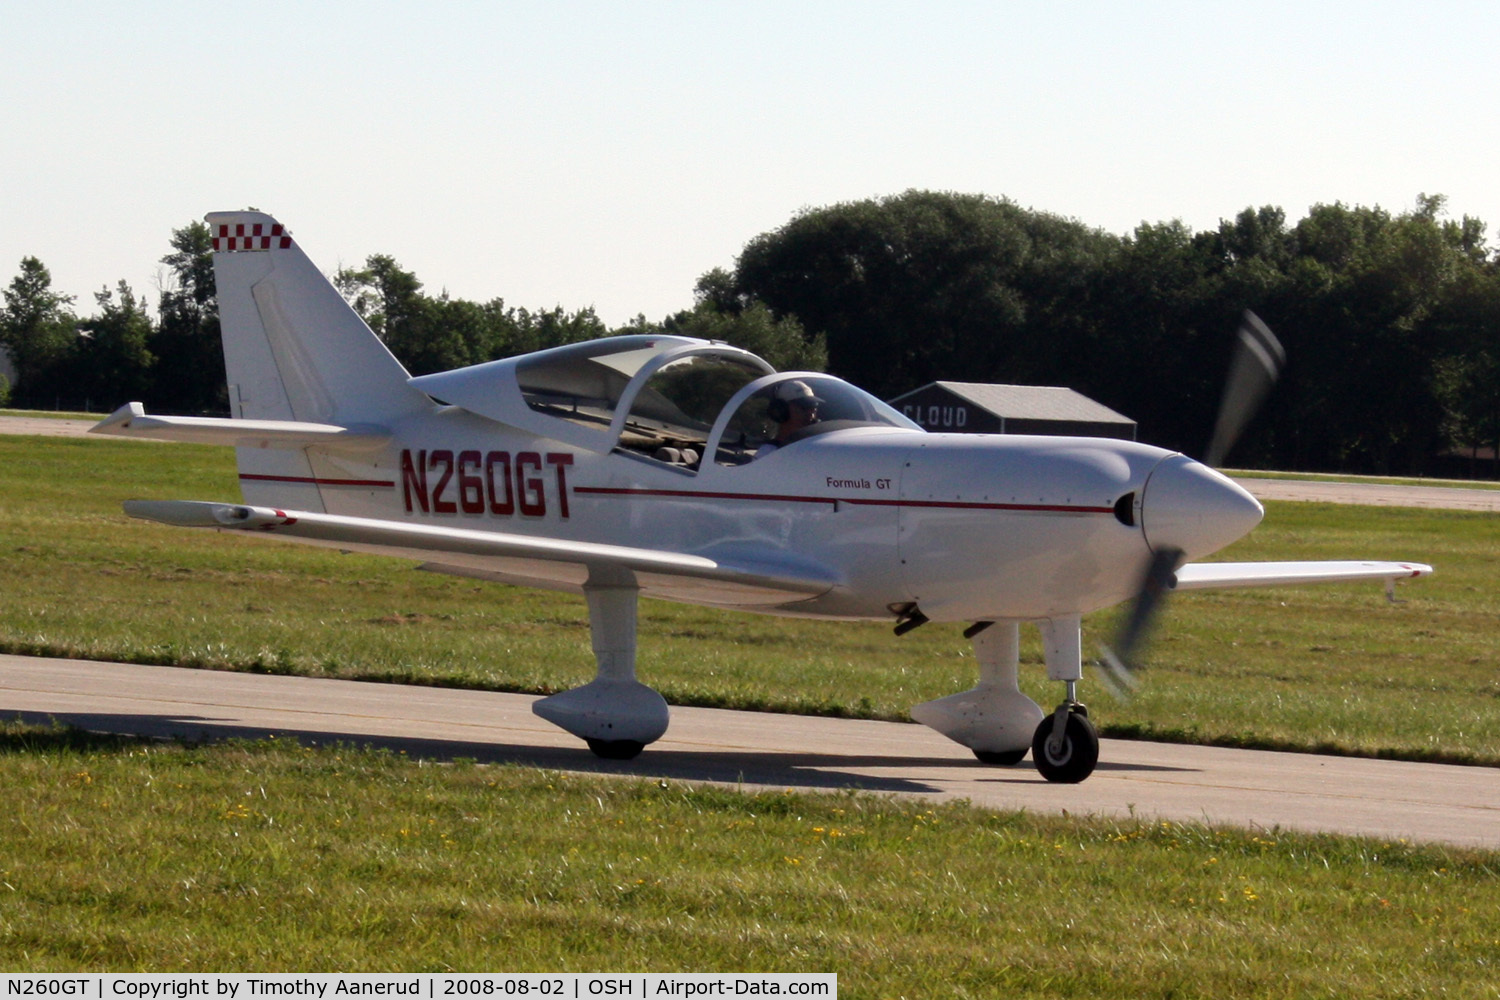 N260GT, 2002 Midwest Aerosport Inc FORMULA GT C/N 104, EAA AirVenture 2008